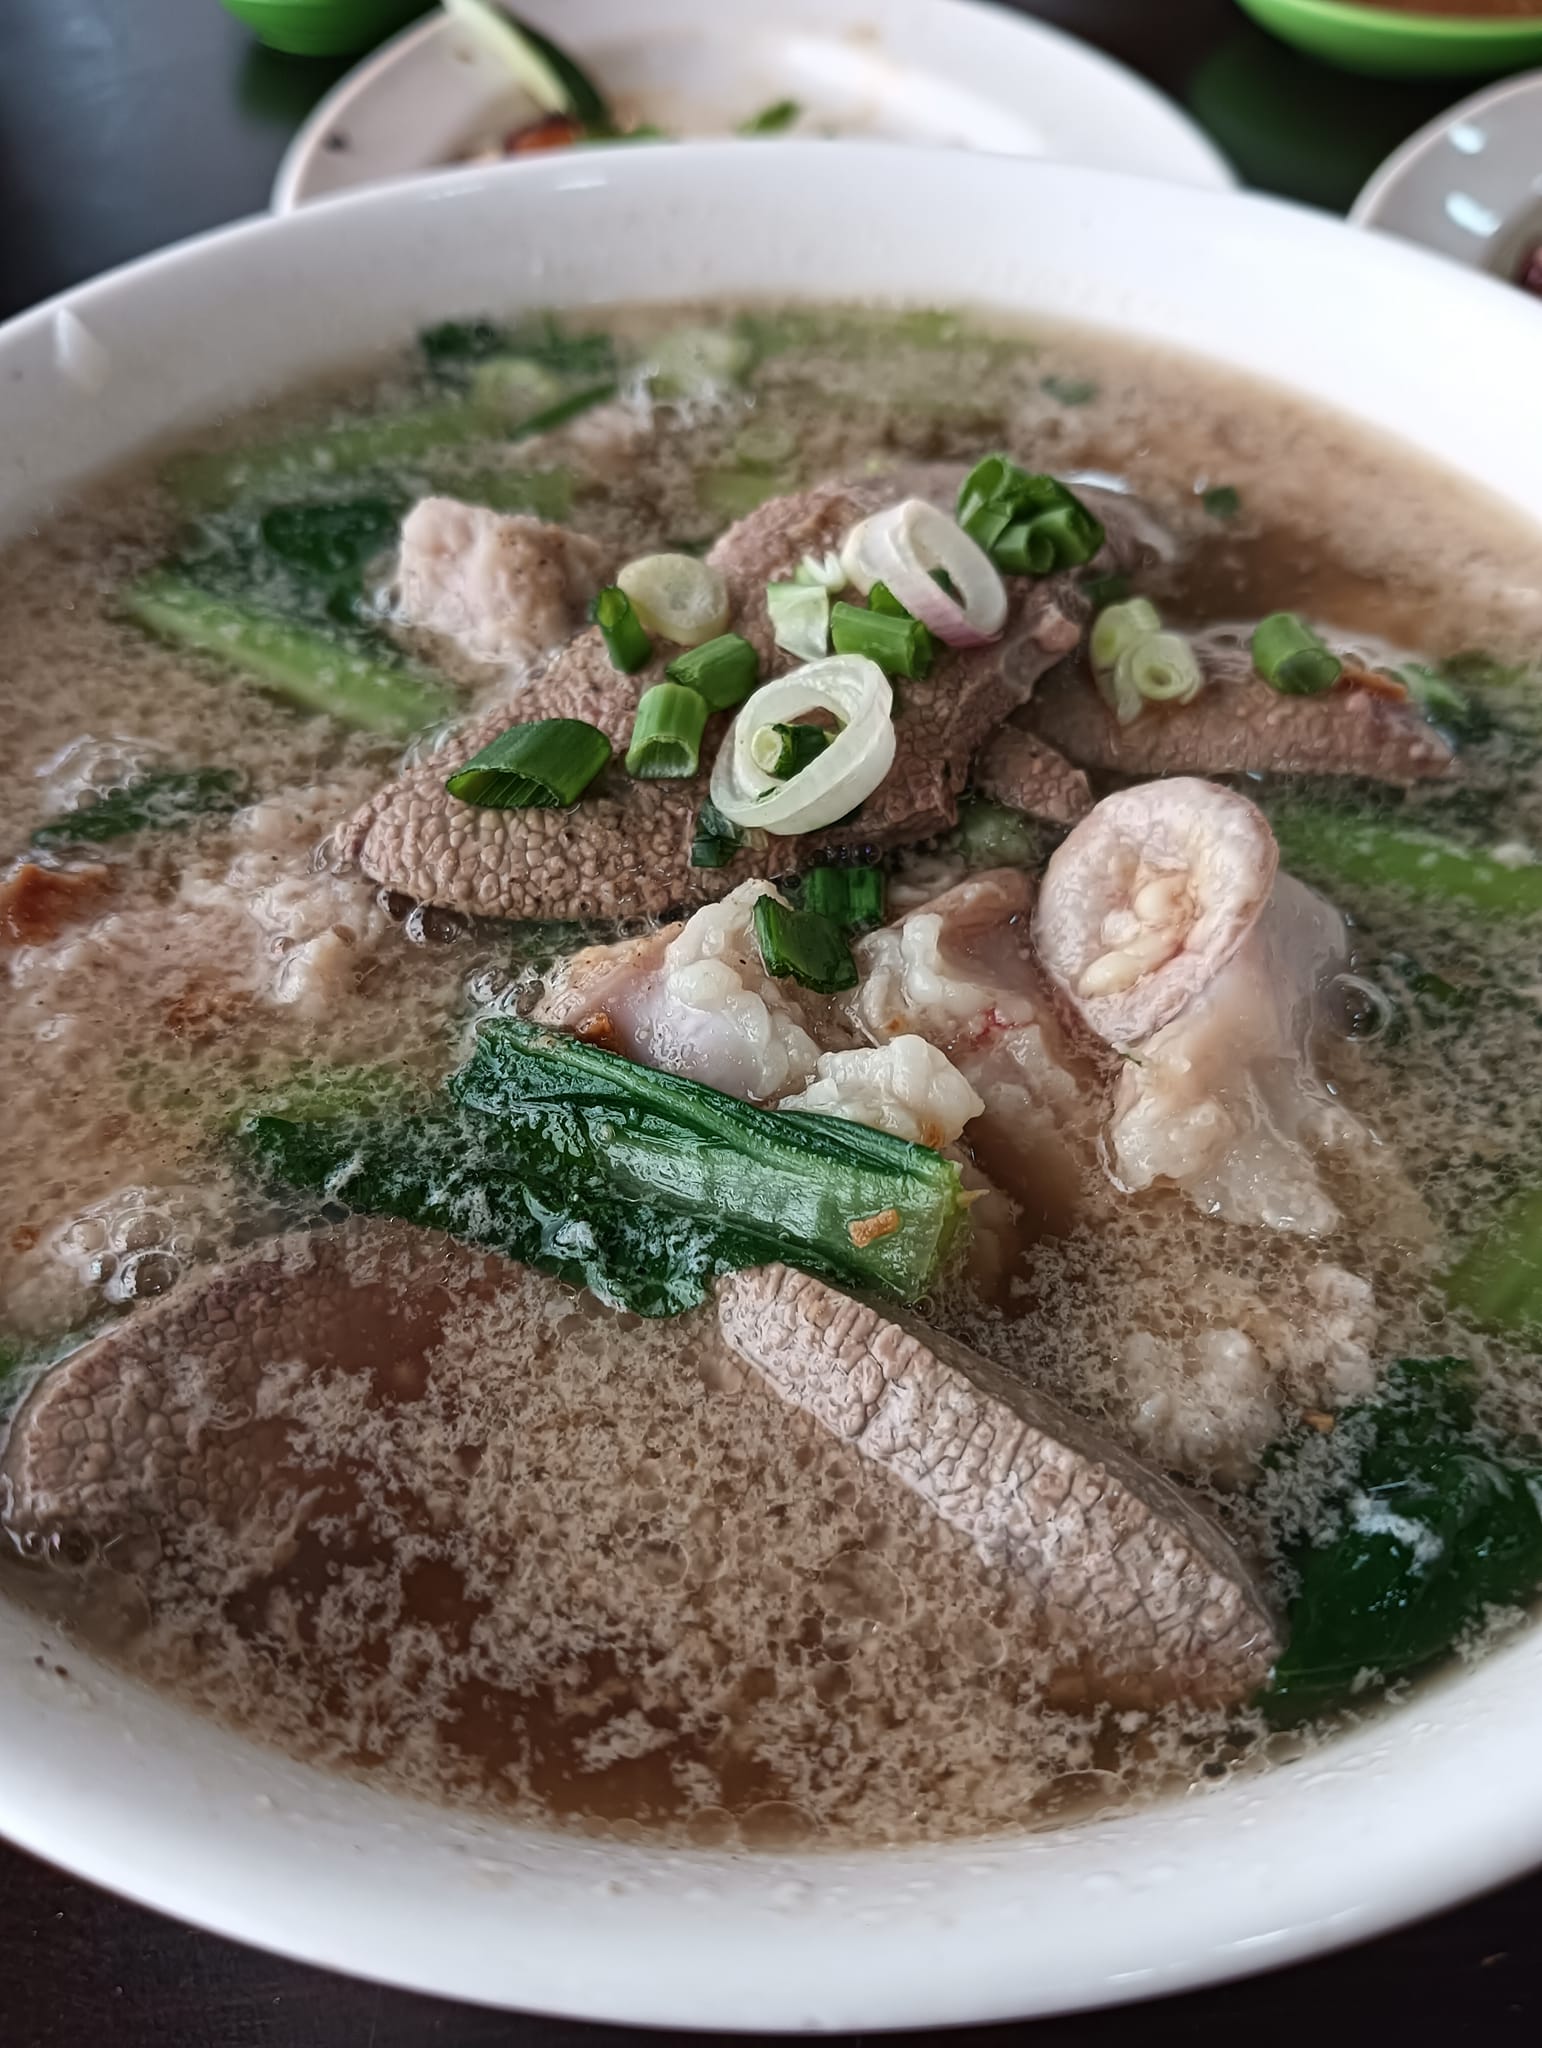 Heang Huan Restaurant Pork Noodles